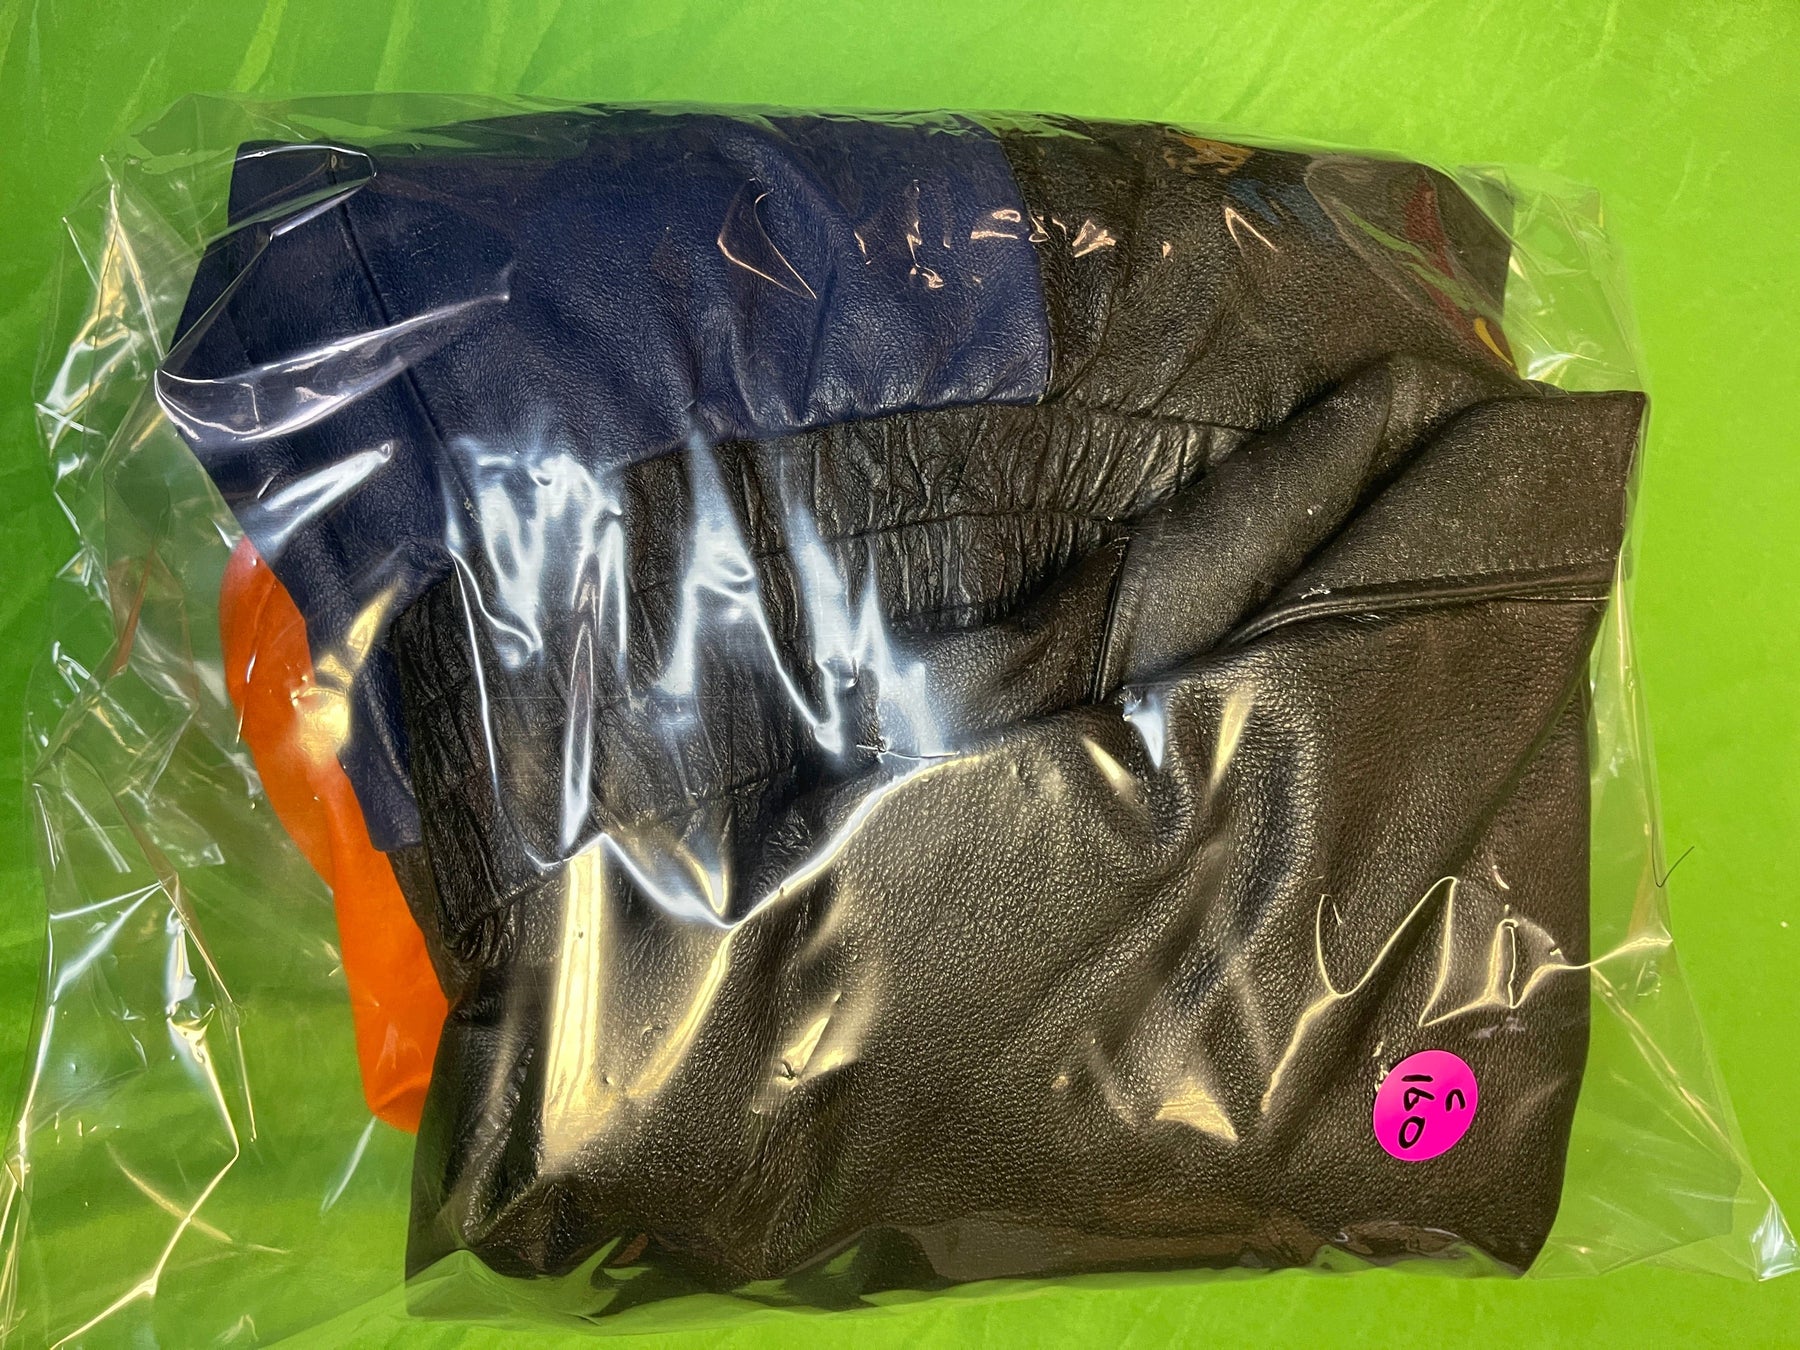 NFL Denver Broncos GIII Vintage 100% Leather Jacket Men's X-Large